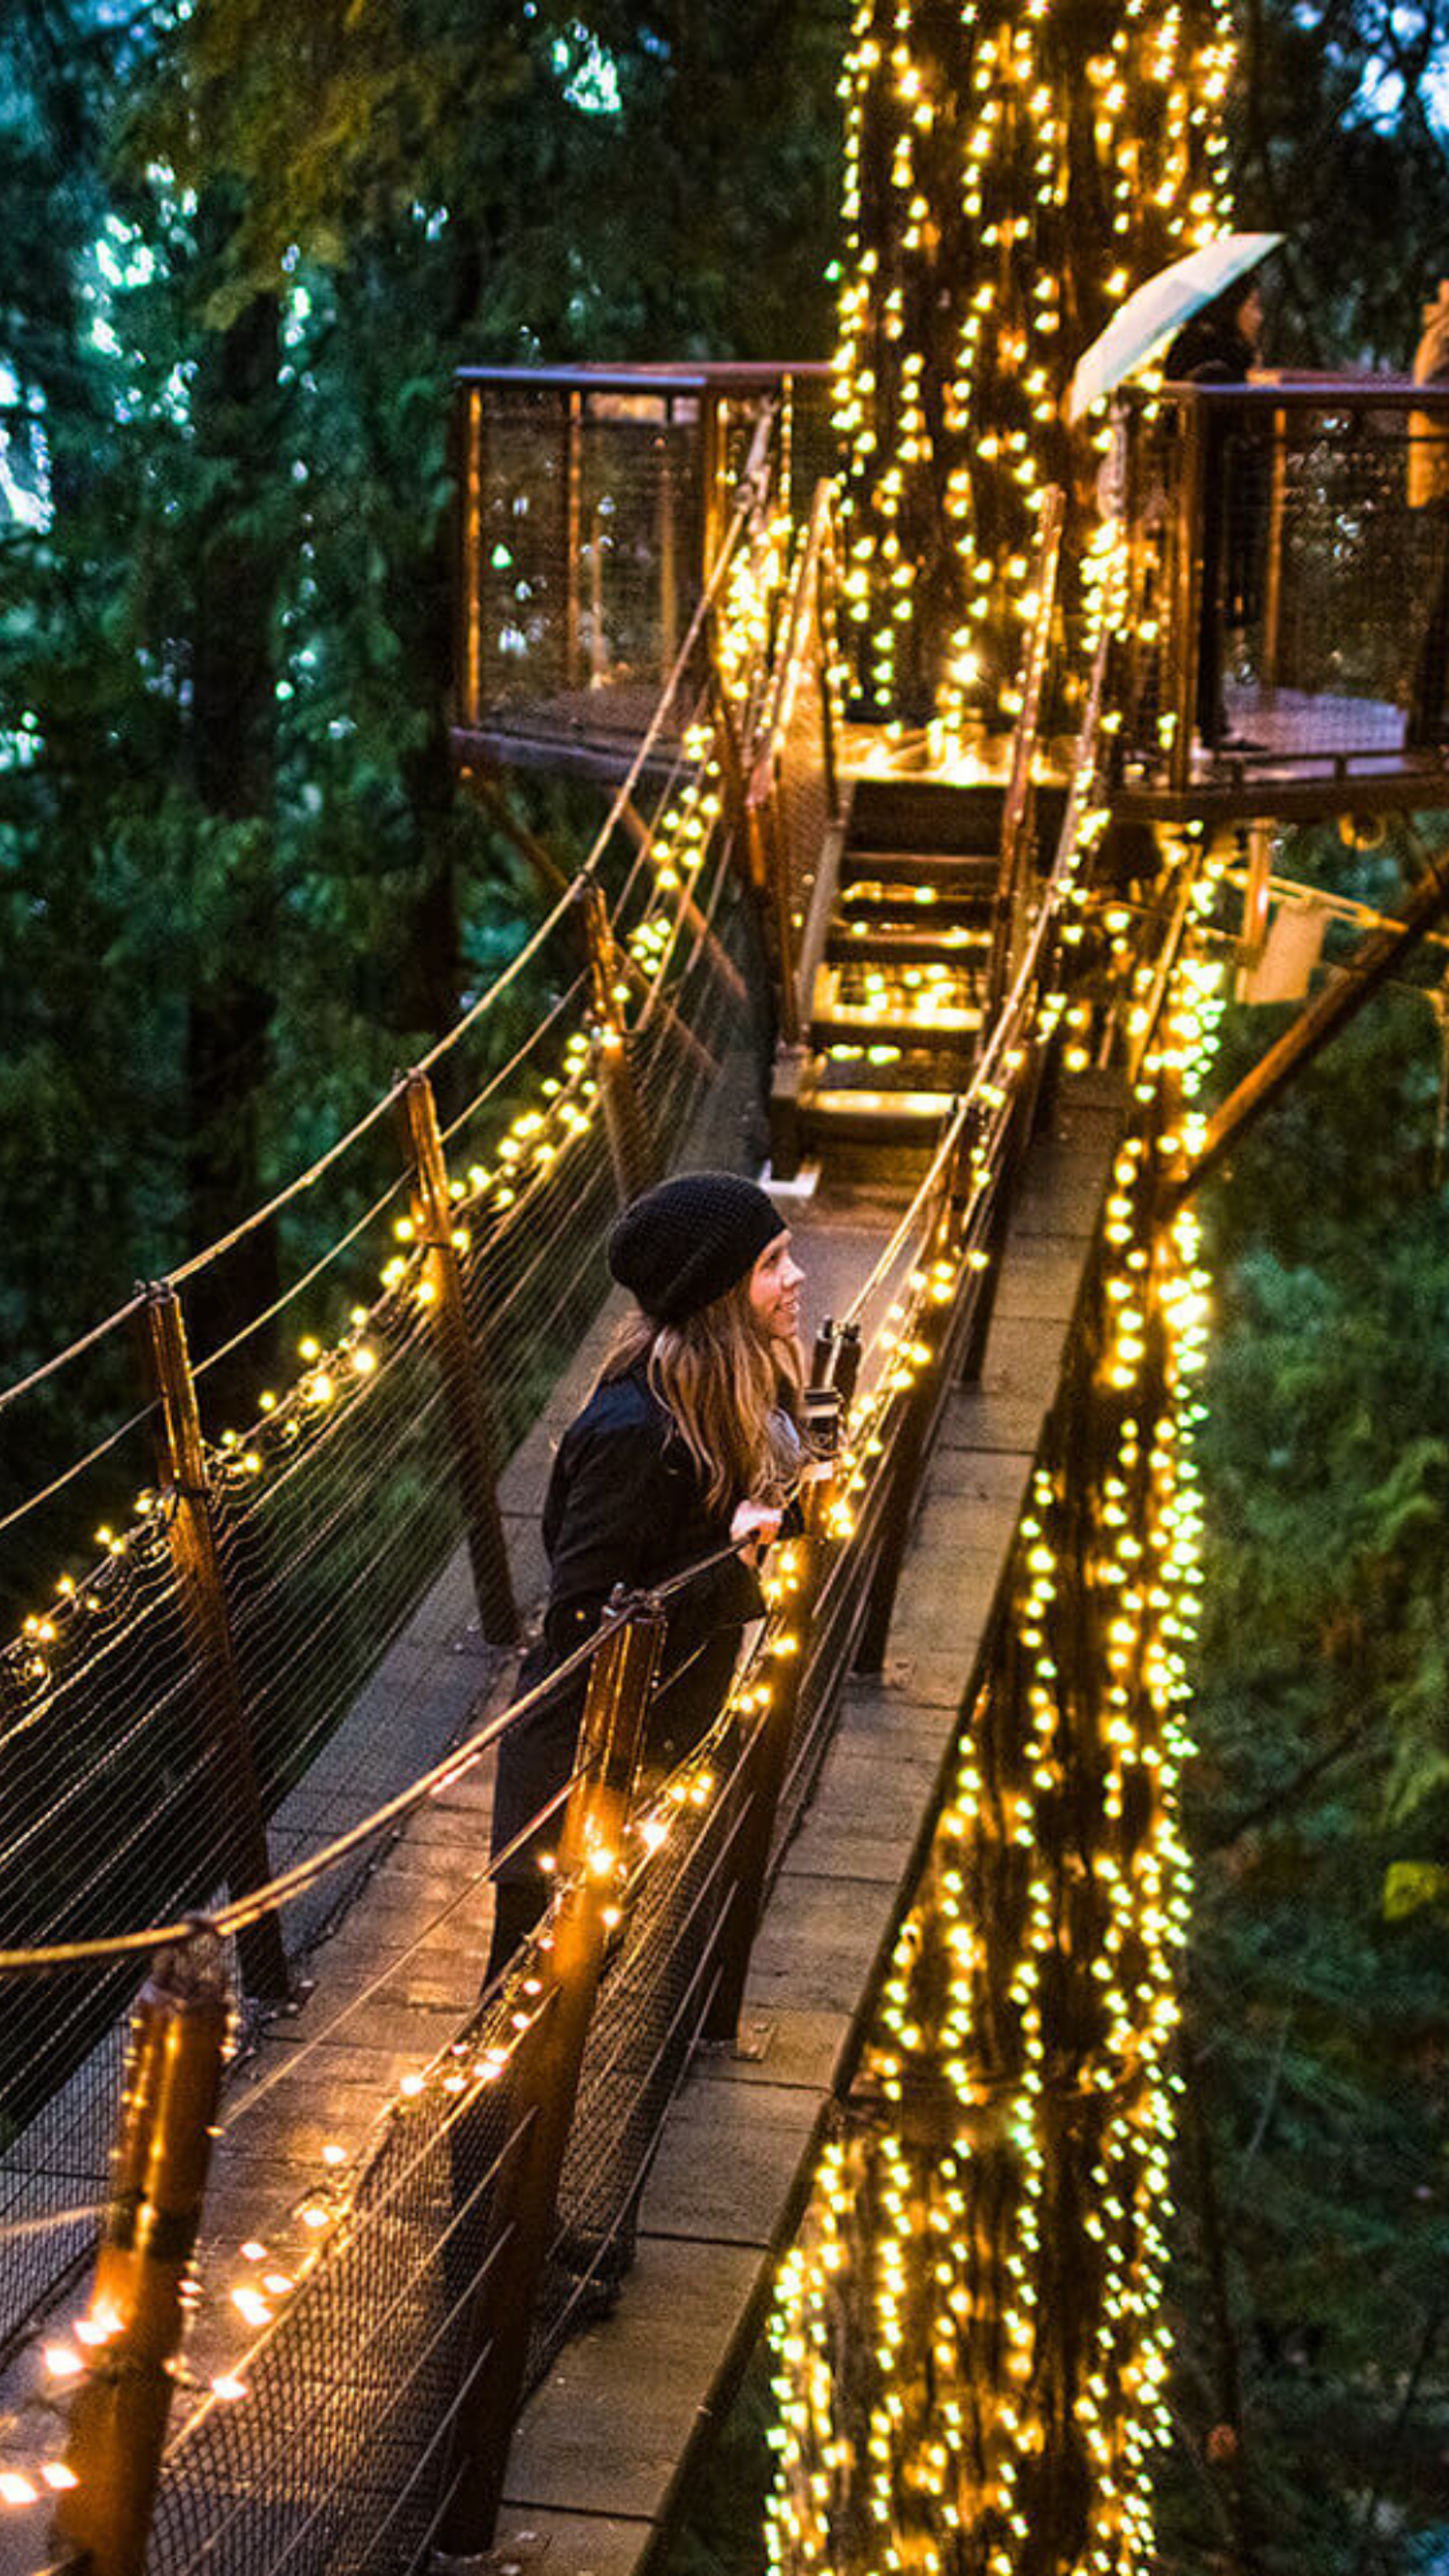 Una mujer disfruta de una tarde mágica en un puente colgante bellamente iluminado, rodeado de un denso bosque.